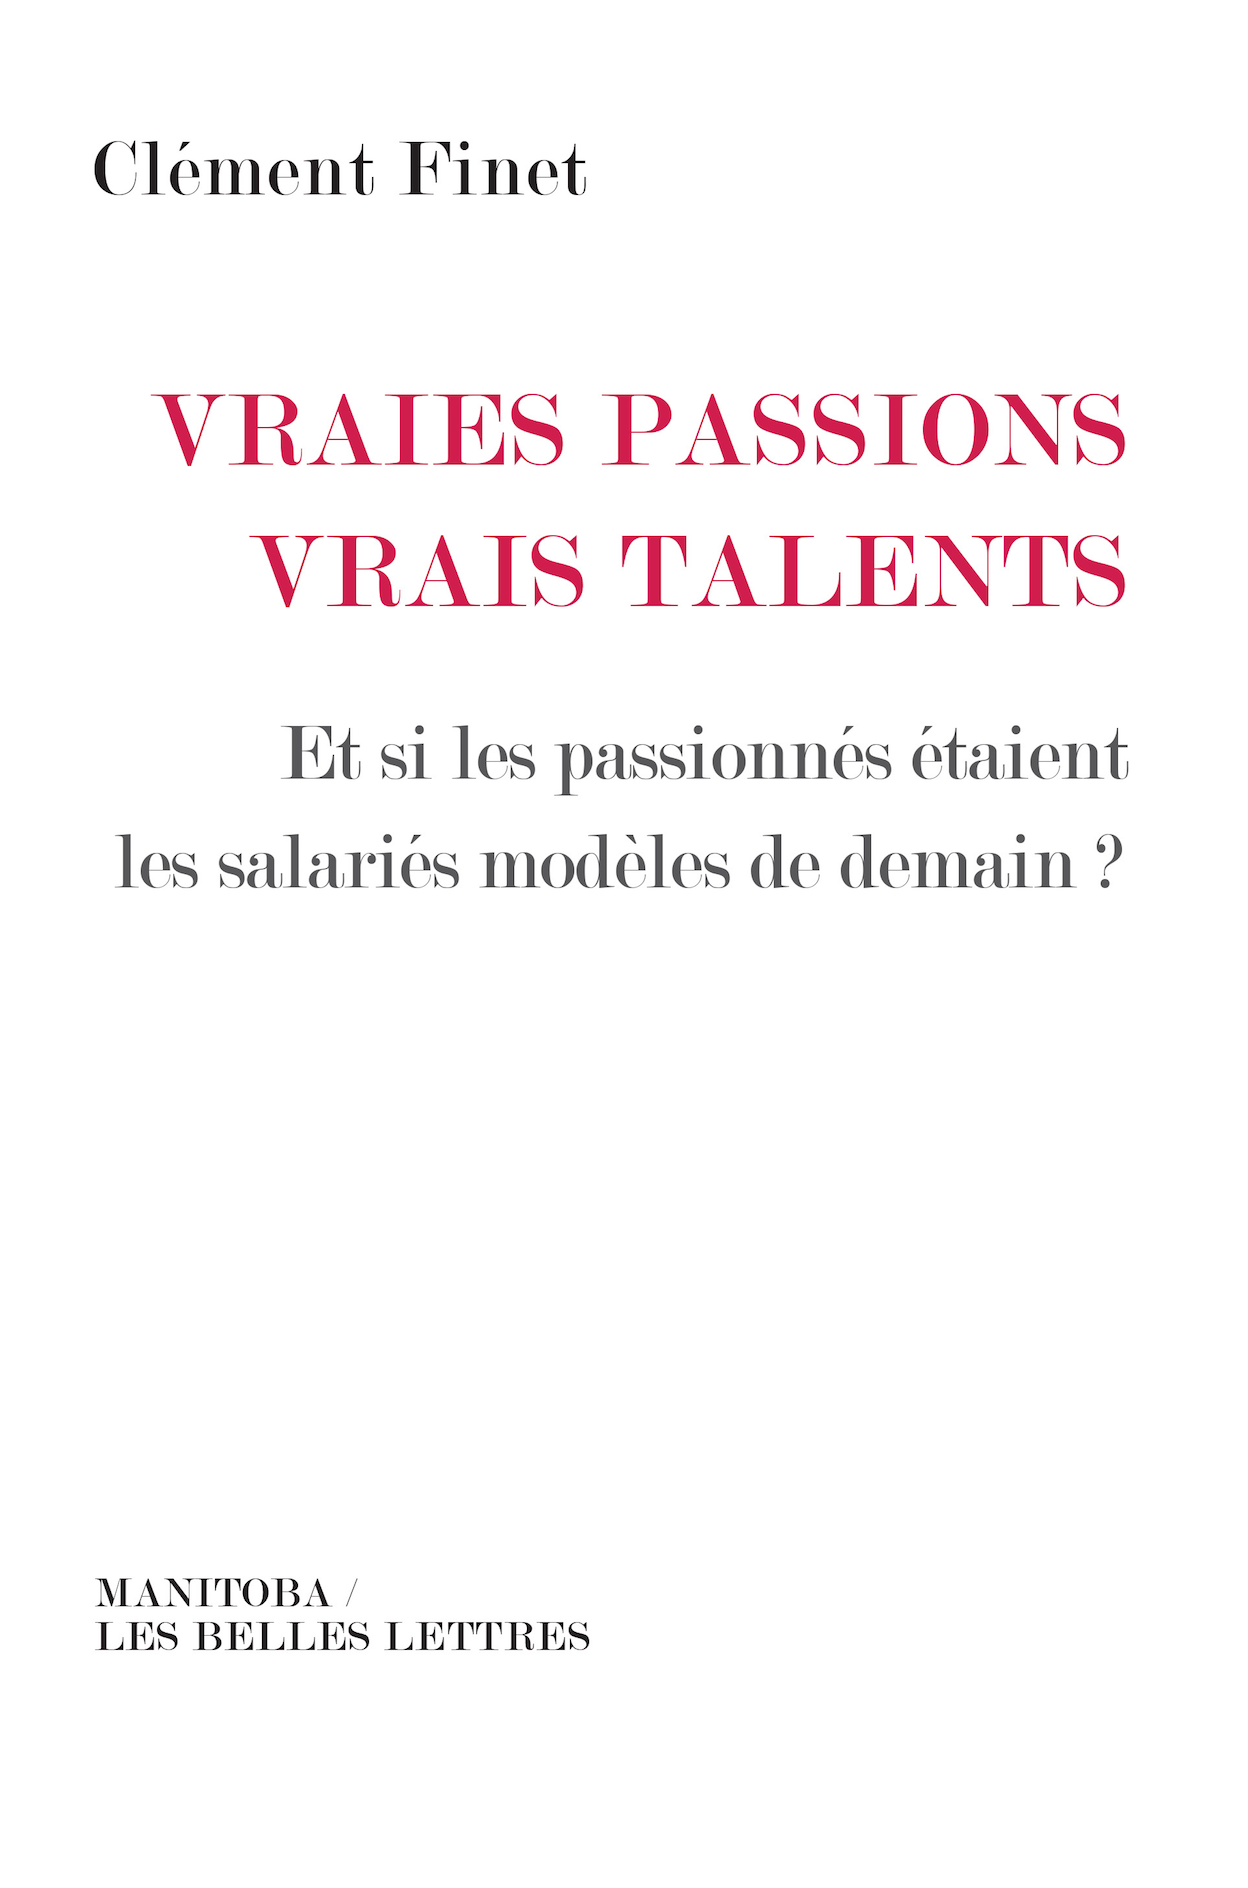 Clément Finet, son livre: Vraies passions, vrais talents